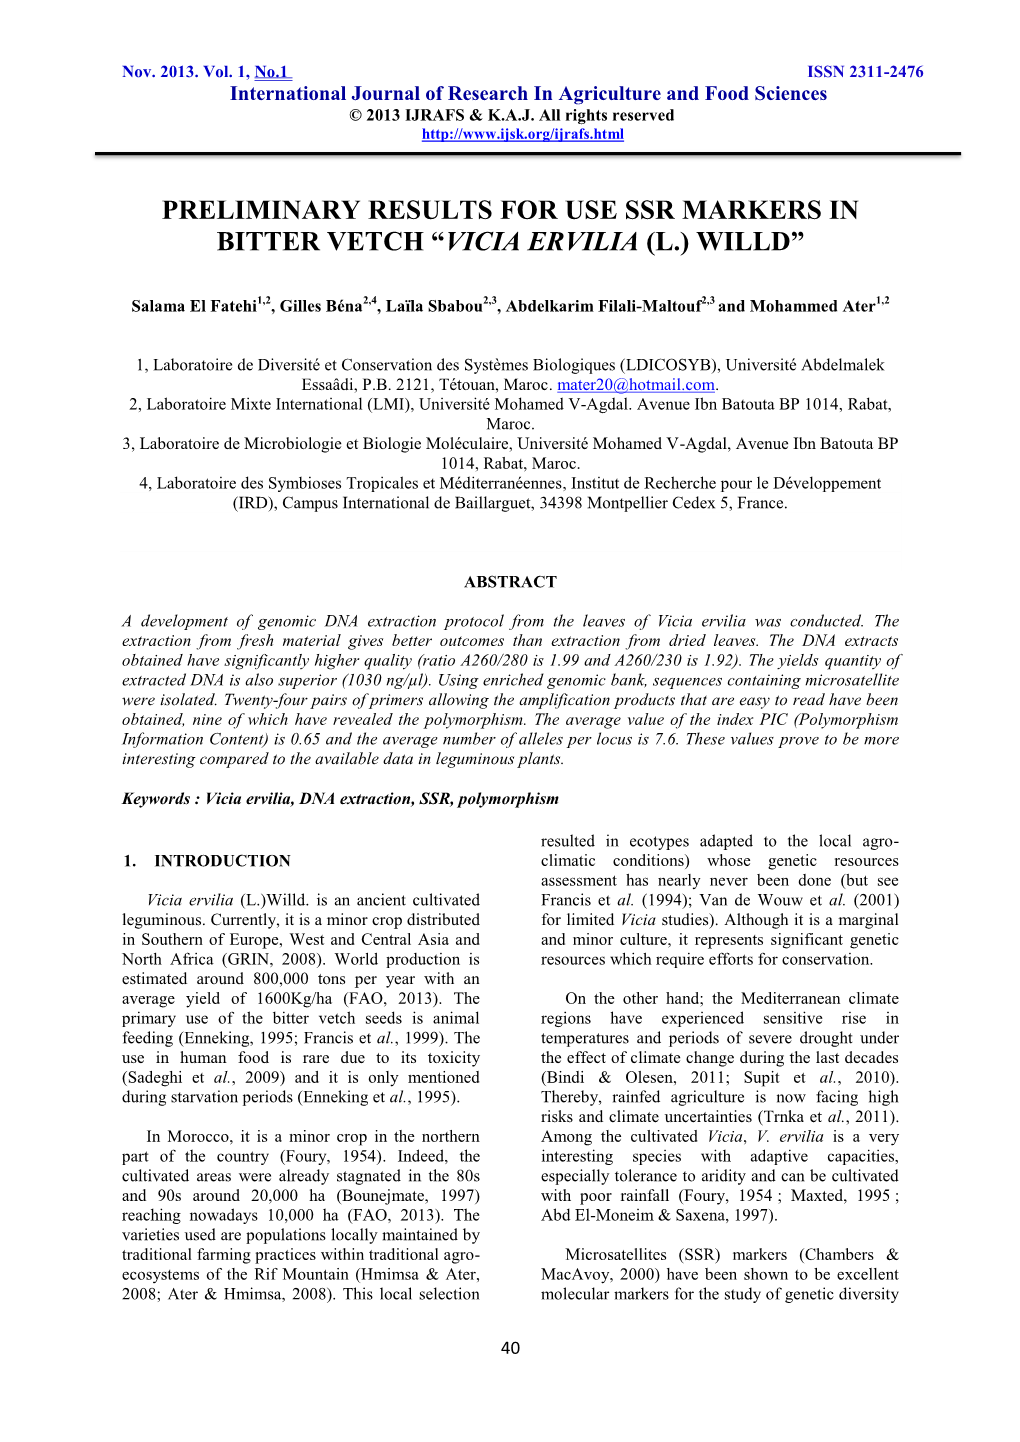 Preliminary Results for Use Ssr Markers in Bitter Vetch “Vicia Ervilia (L.) Willd”